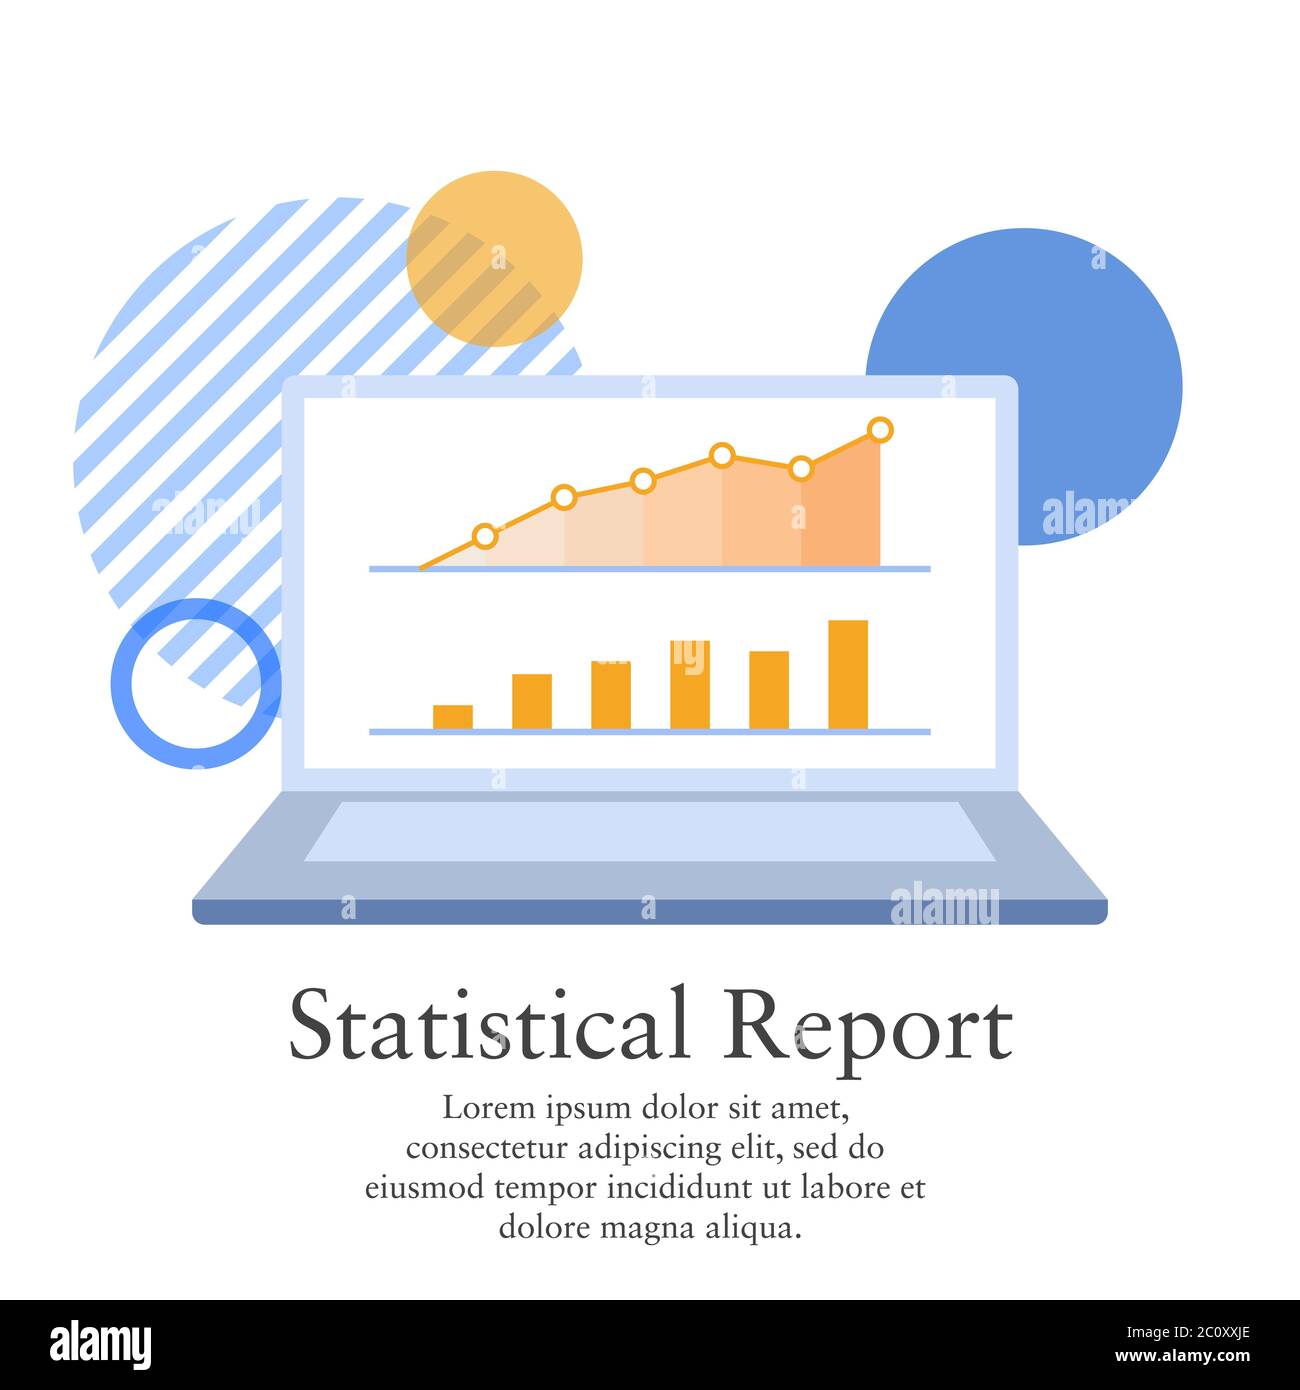 Vektordarstellung eines statistischen Berichts aus einem Geschäftsgewinn. Darstellung der Grafik auf einem Laptop-Bildschirm. Stock Vektor